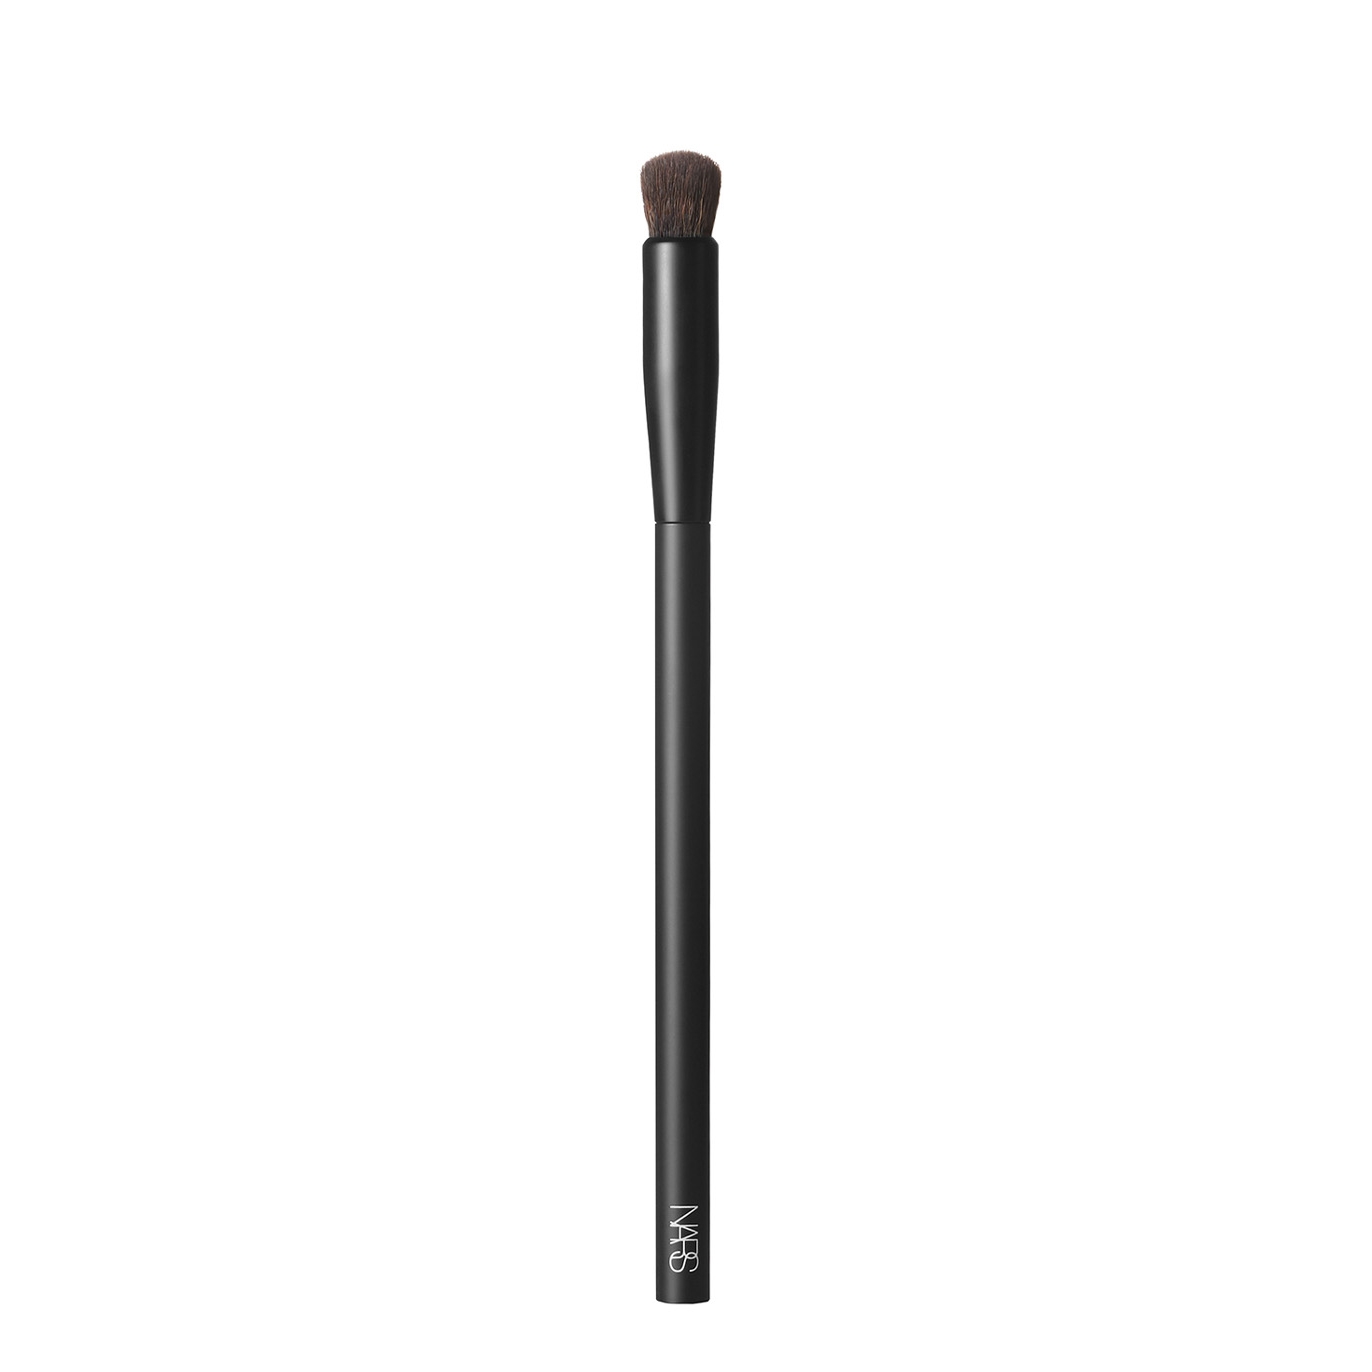 Nars #11 Soft Matte Complete Concealer Brush